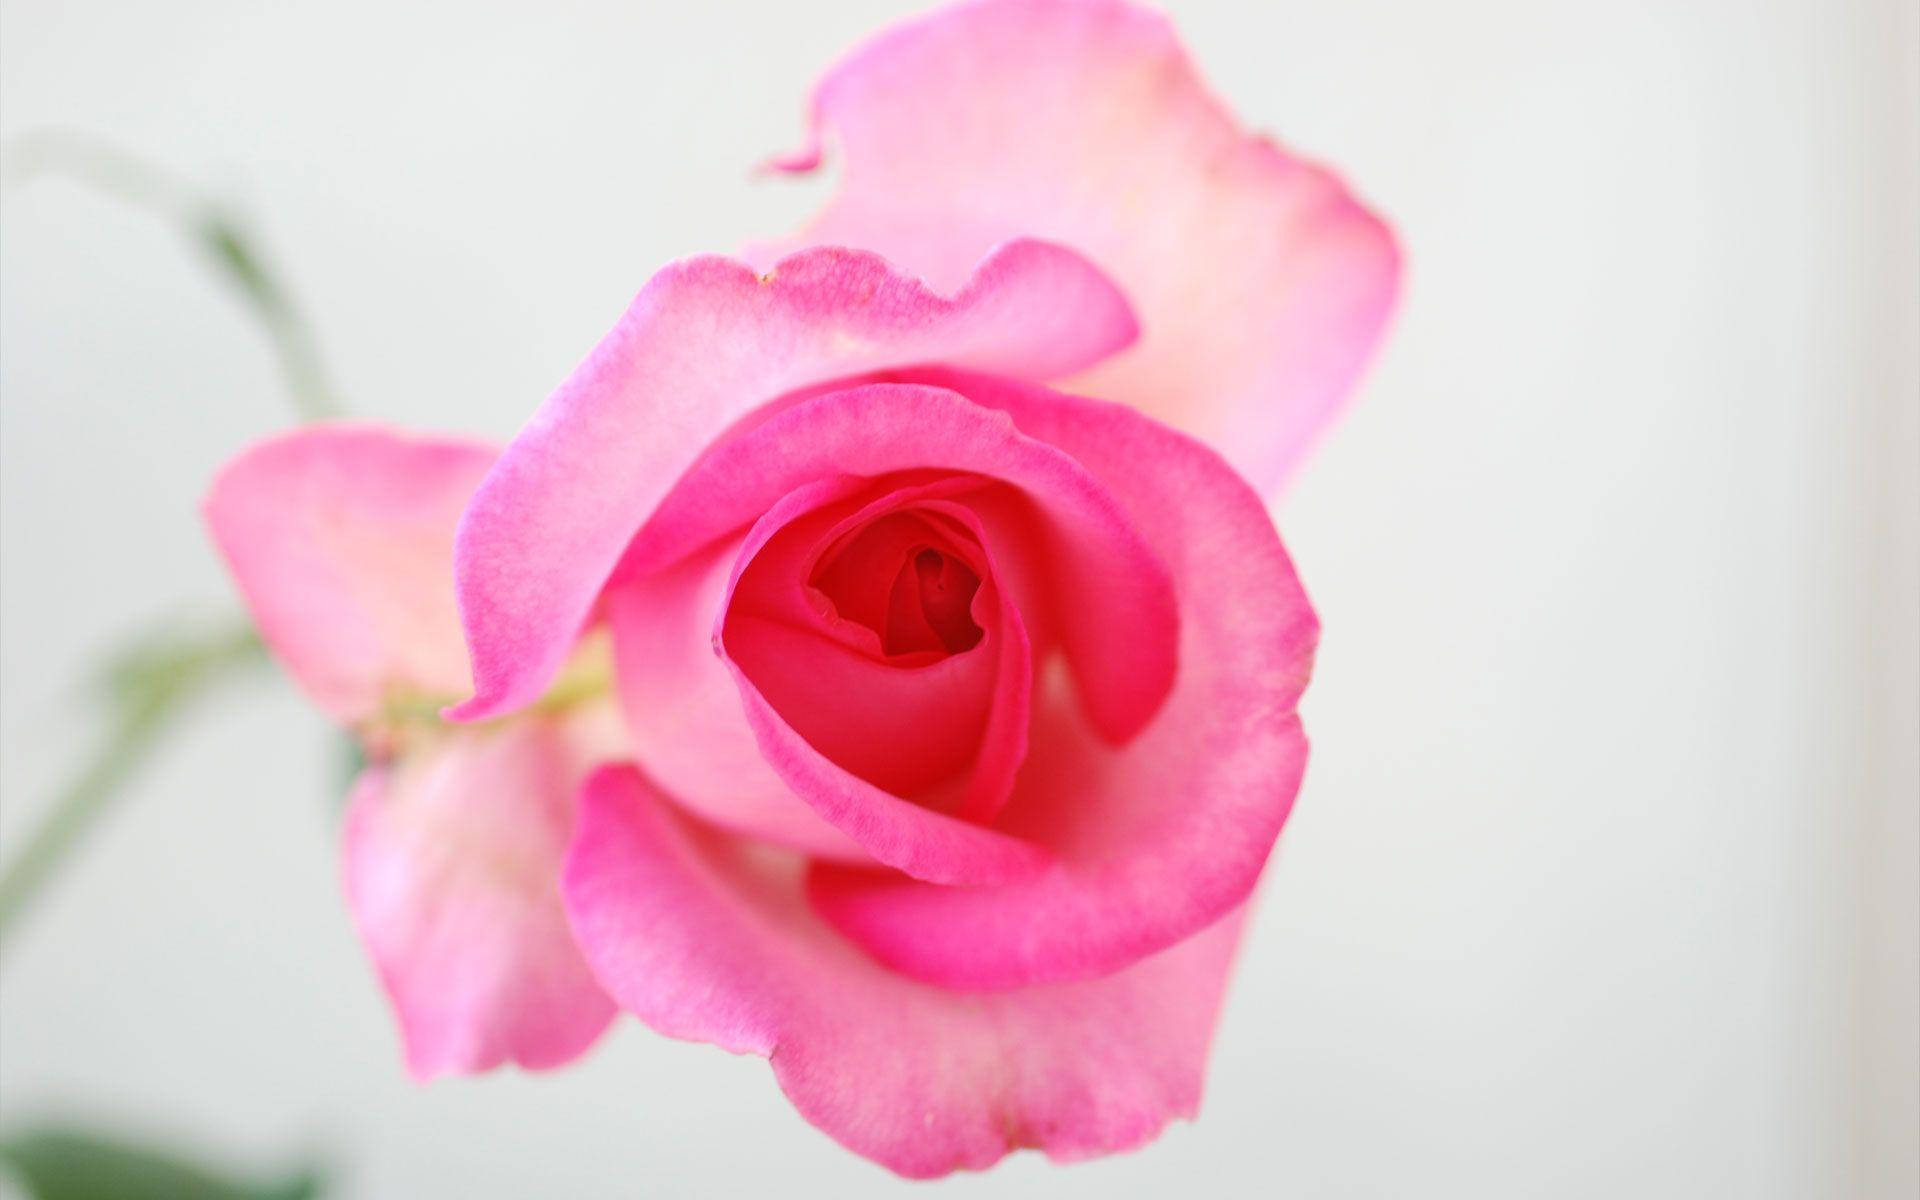 Translucent Pink Rose Flower Background